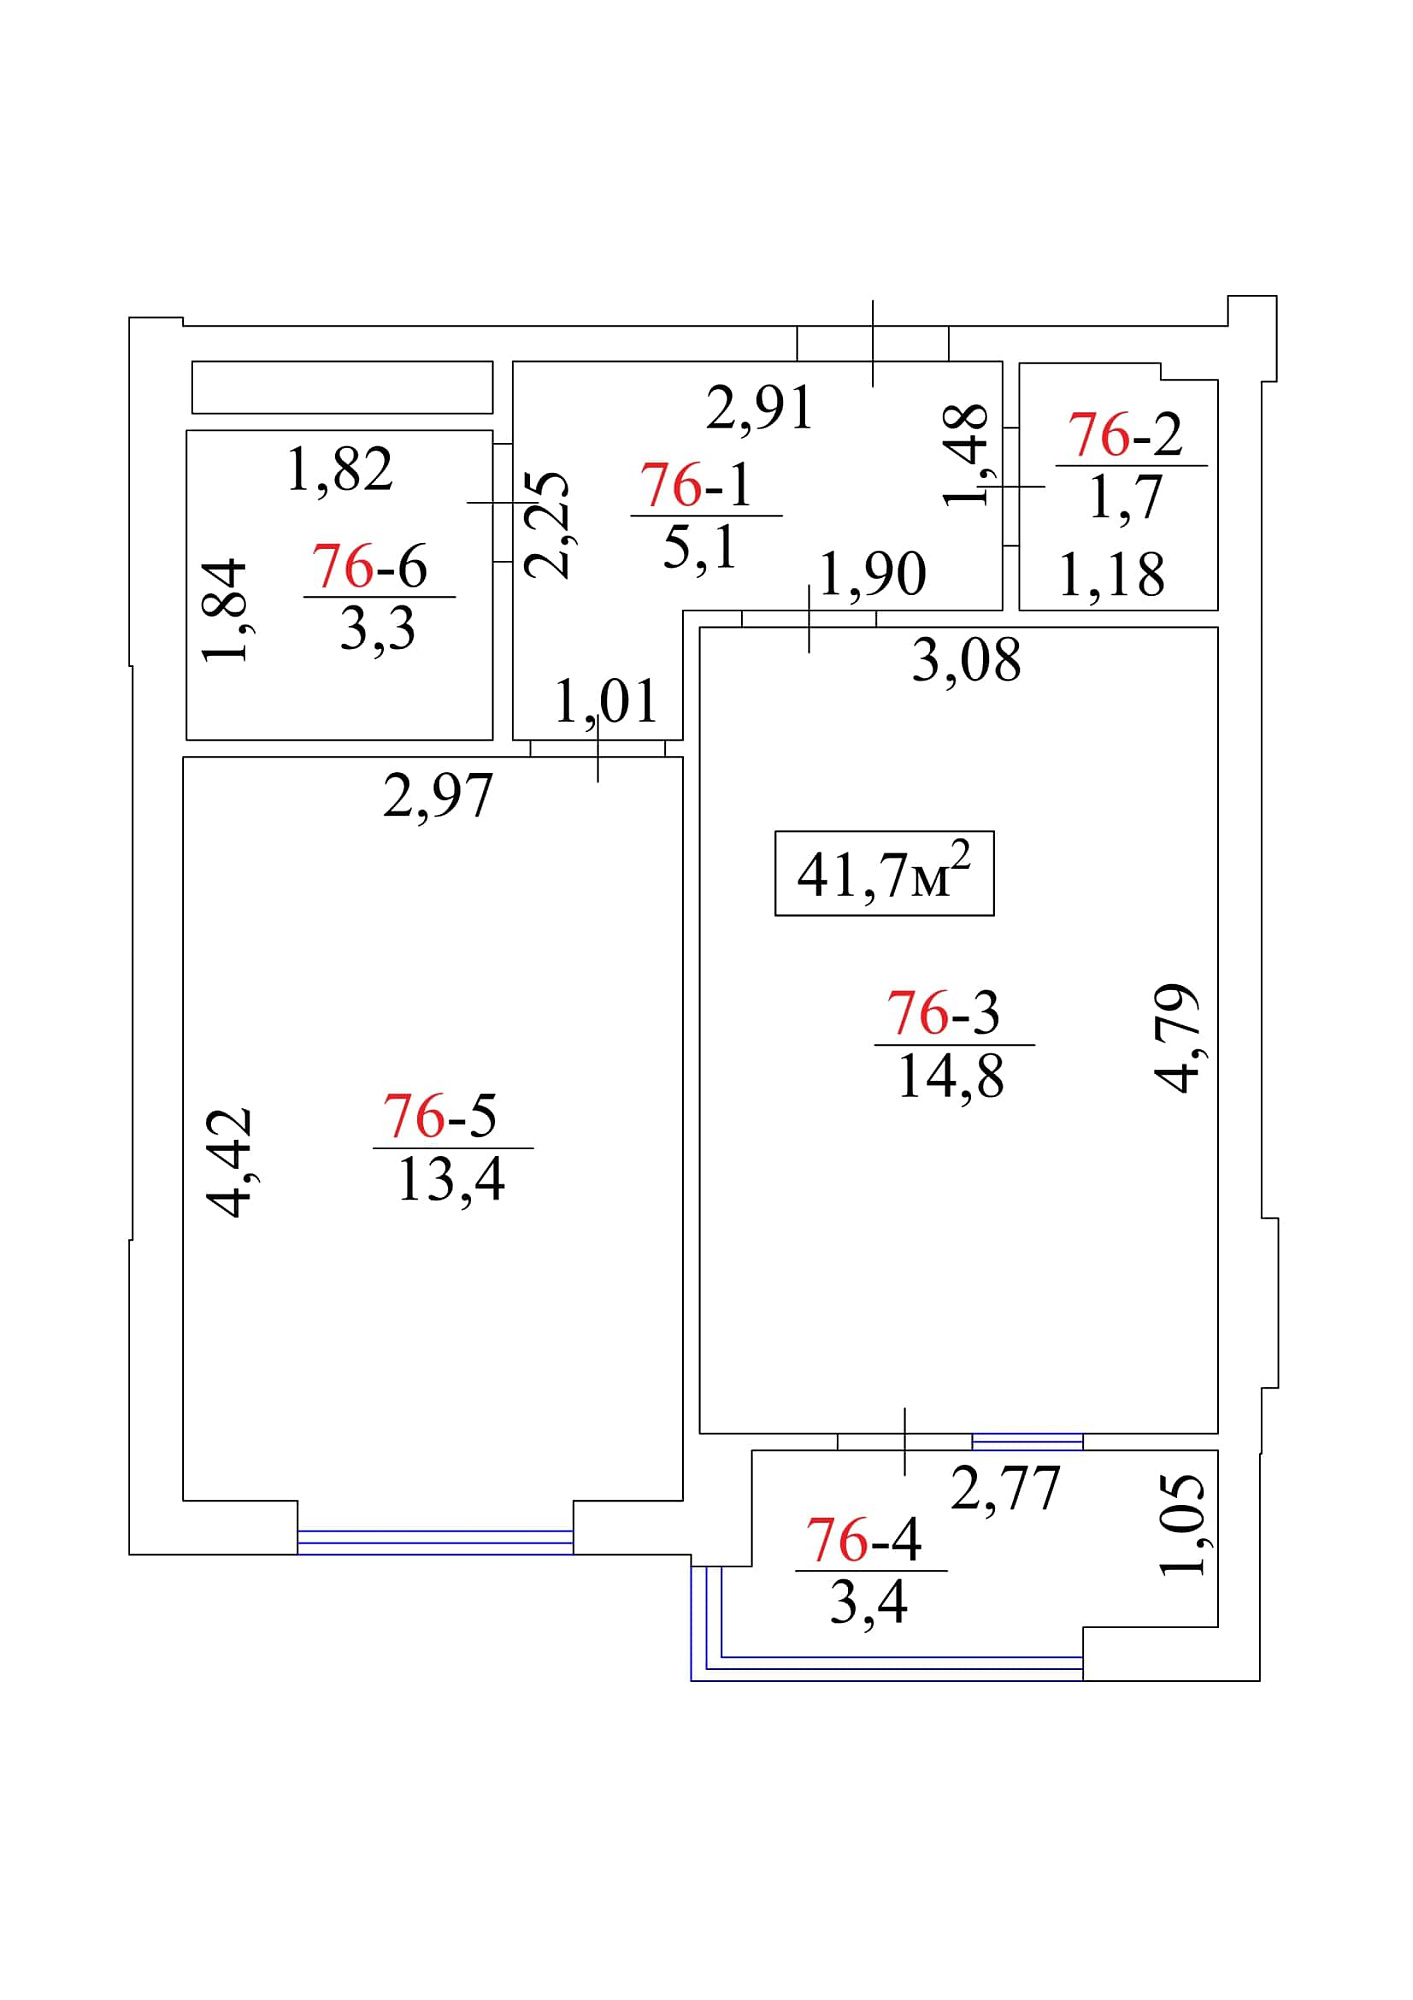 Планировка 1-к квартира площей 41.7м2, AB-01-08/00071.